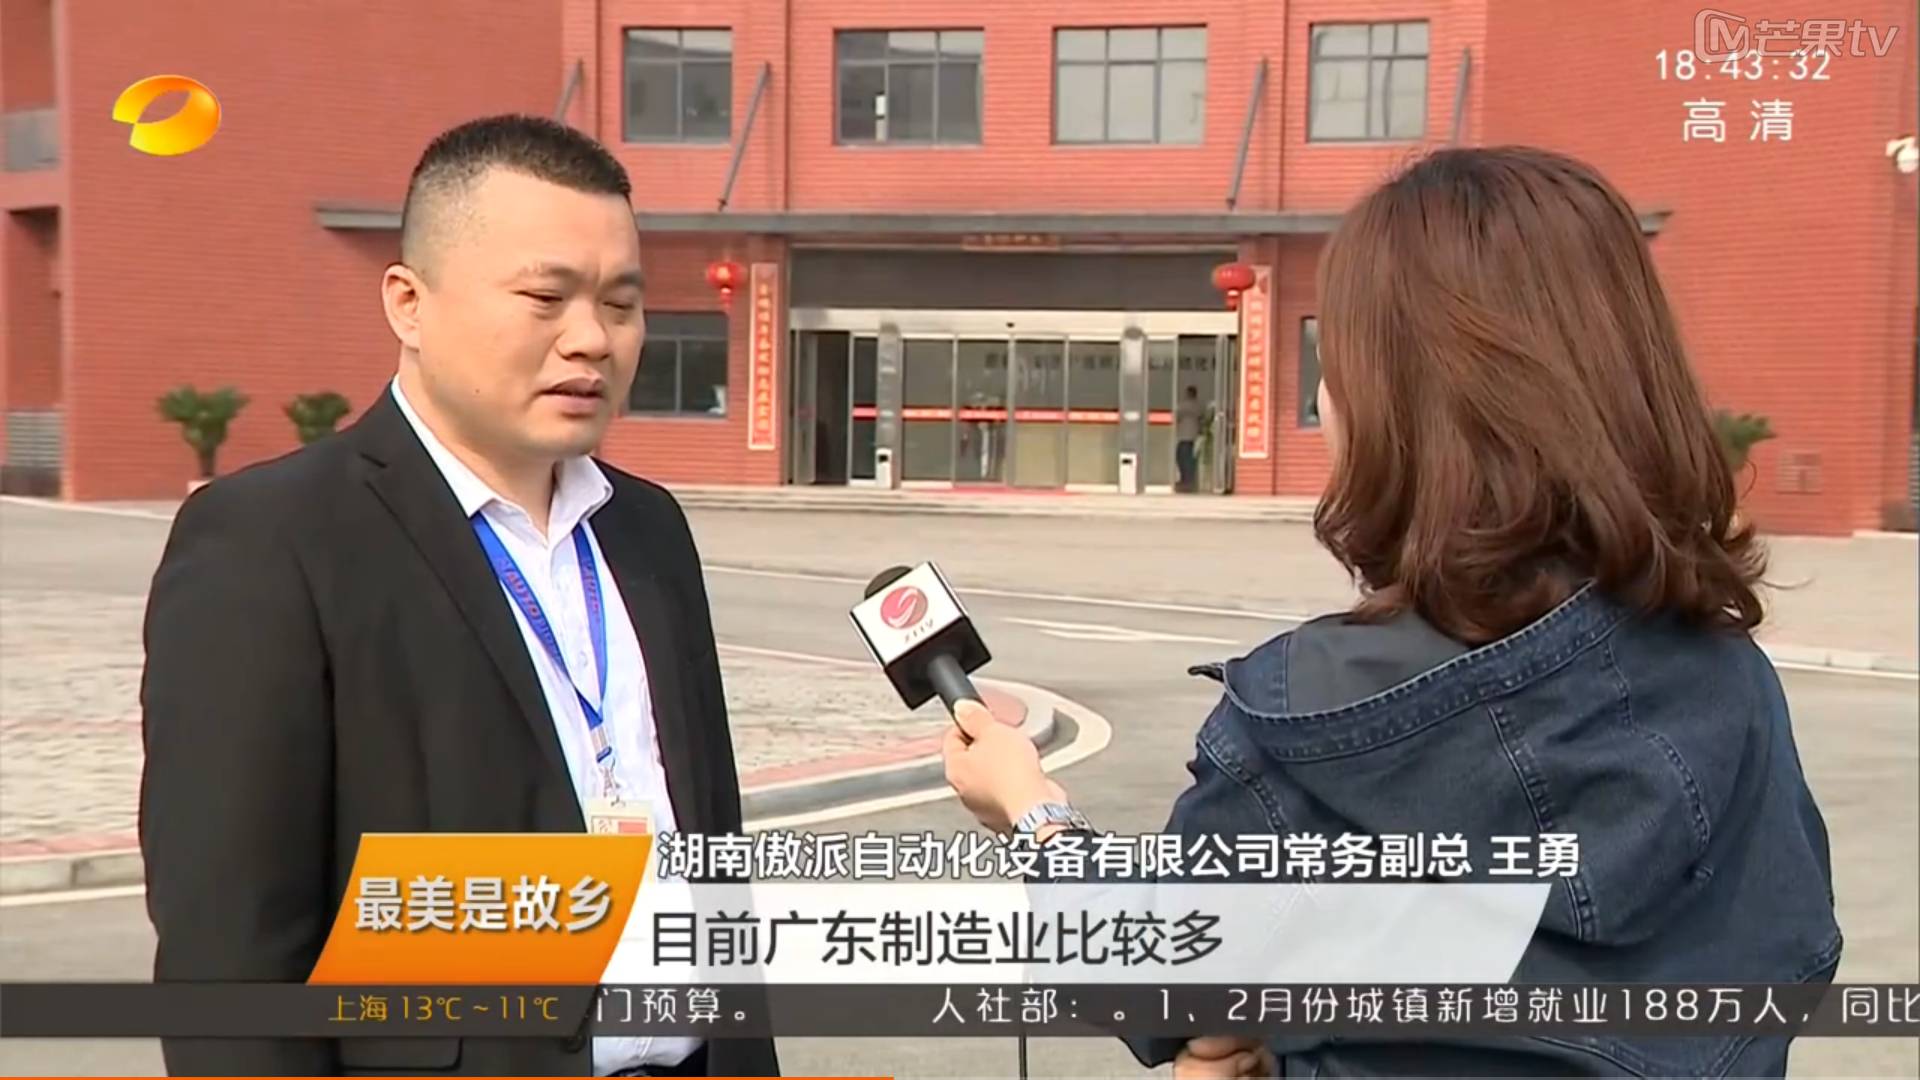 湖南电视台采访傲派自动化